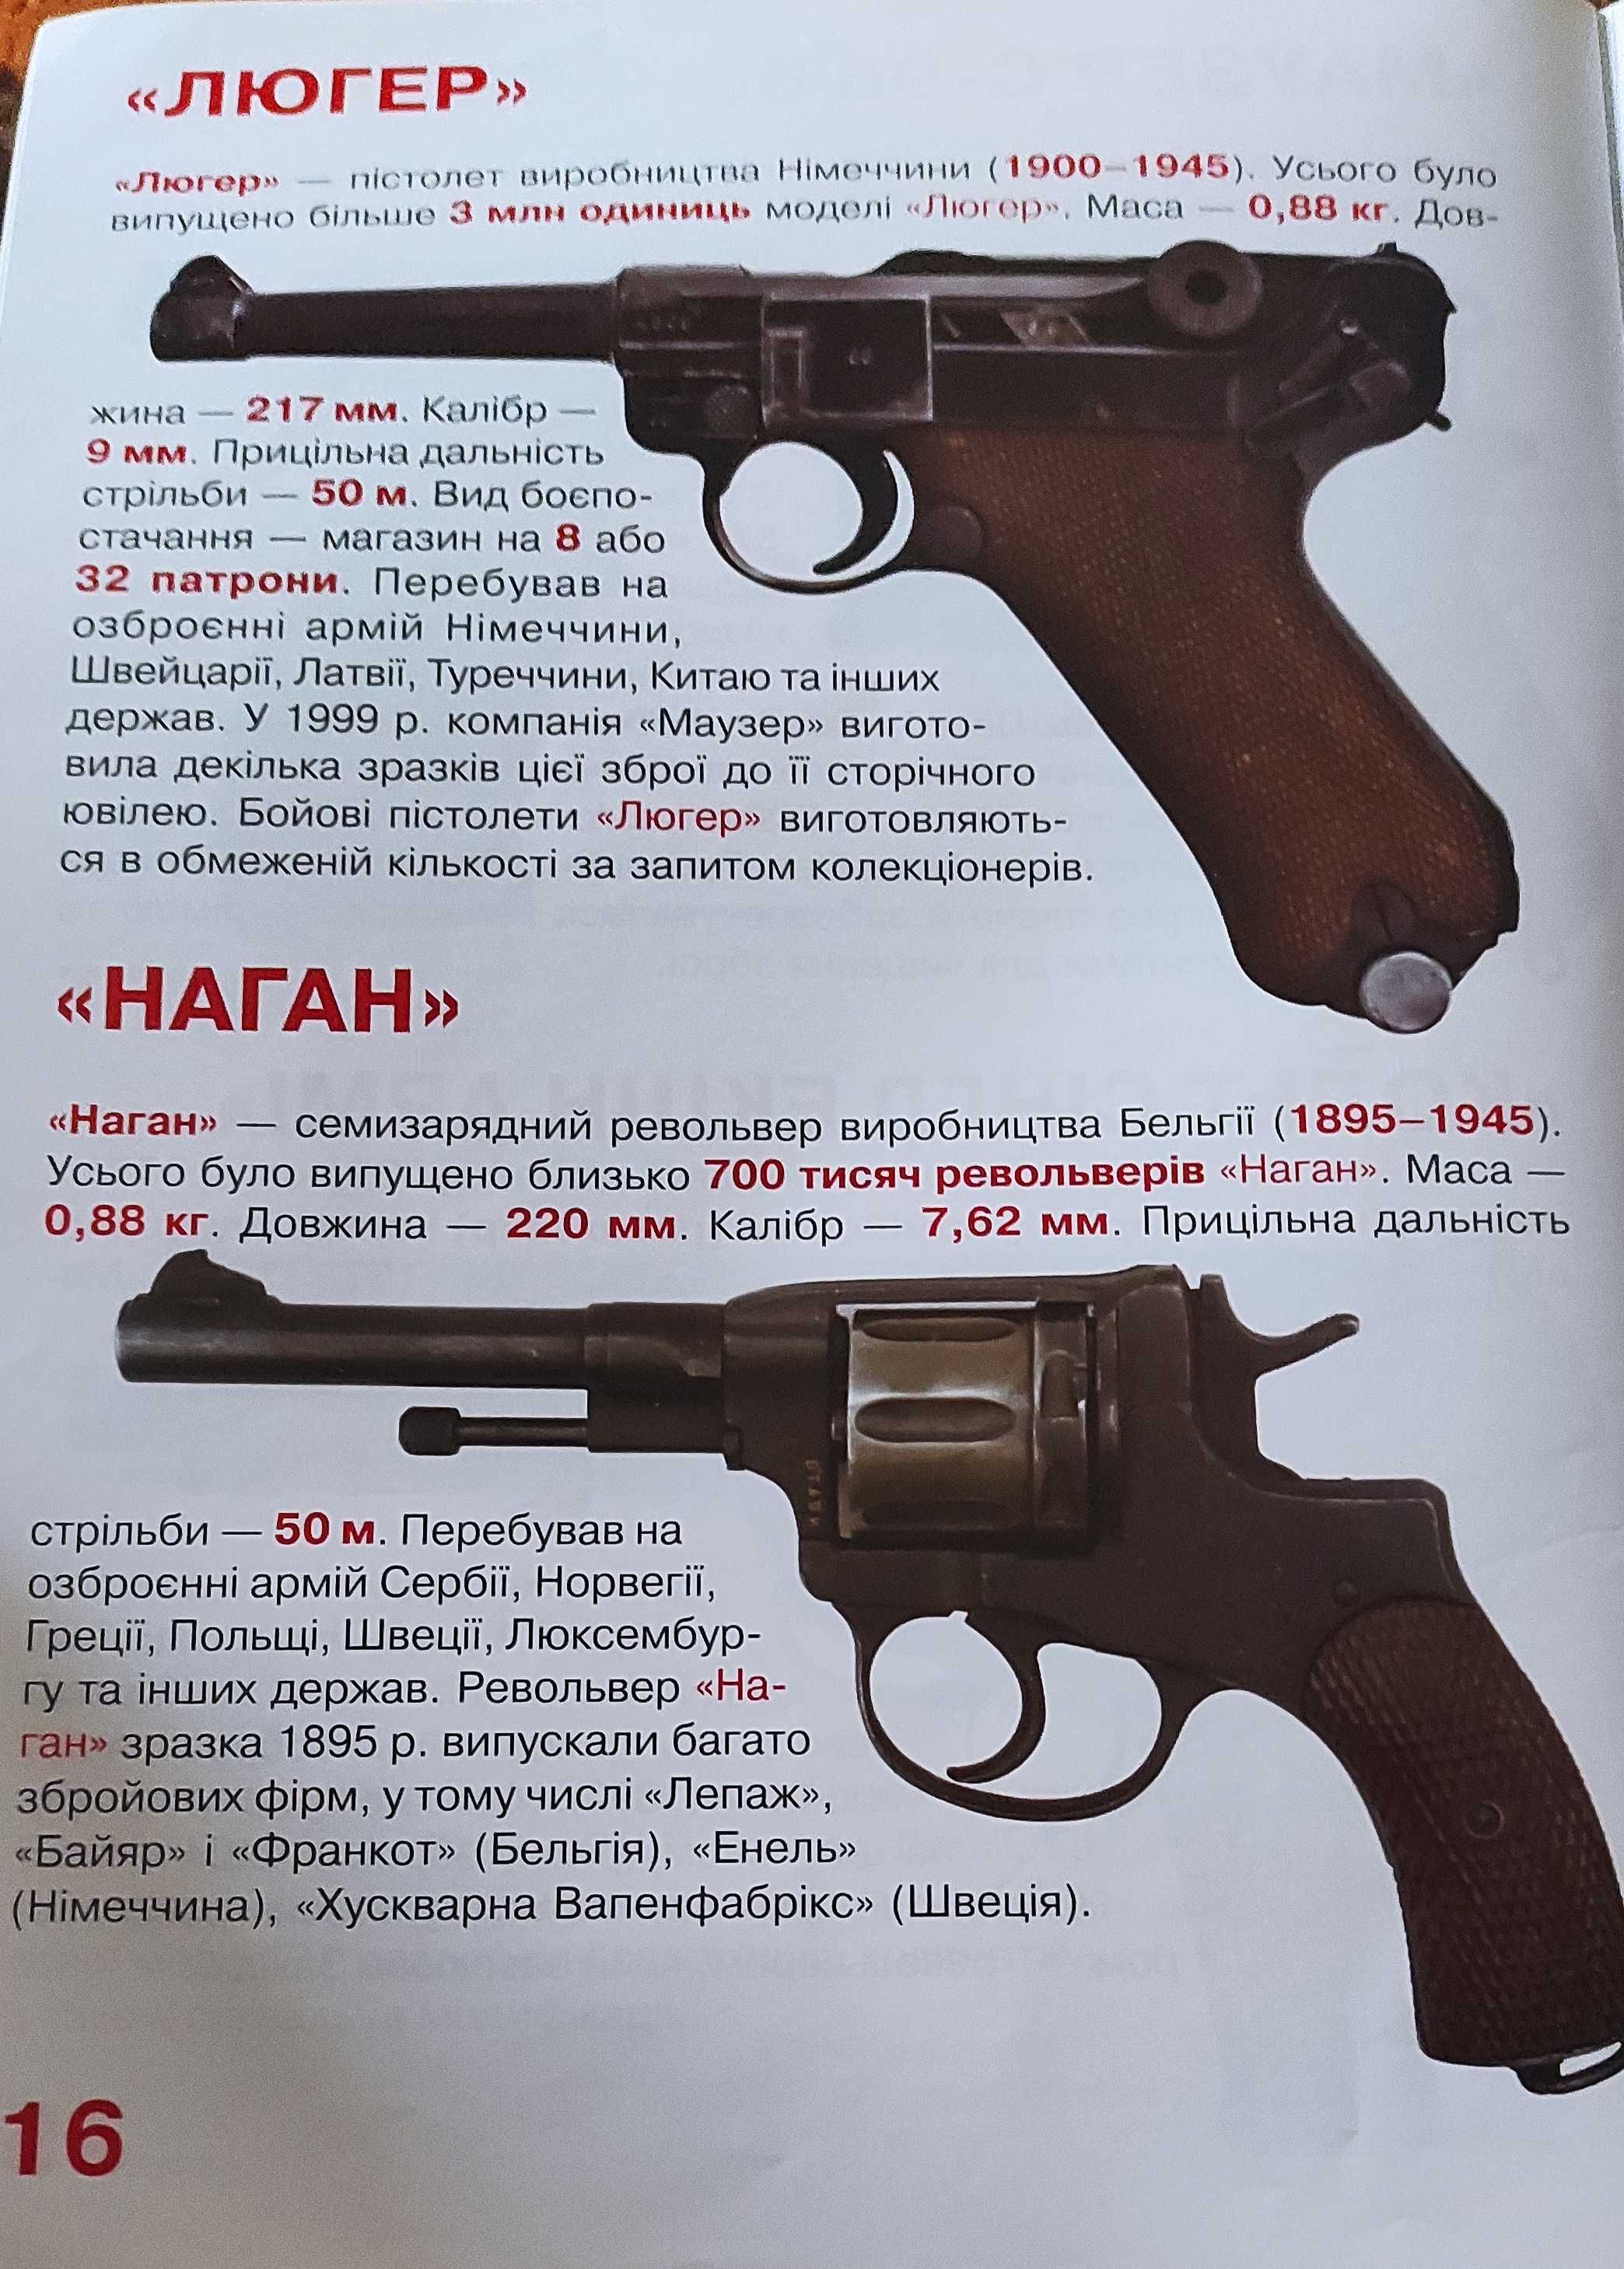 Книжка журнал " пістолети і револьвери"